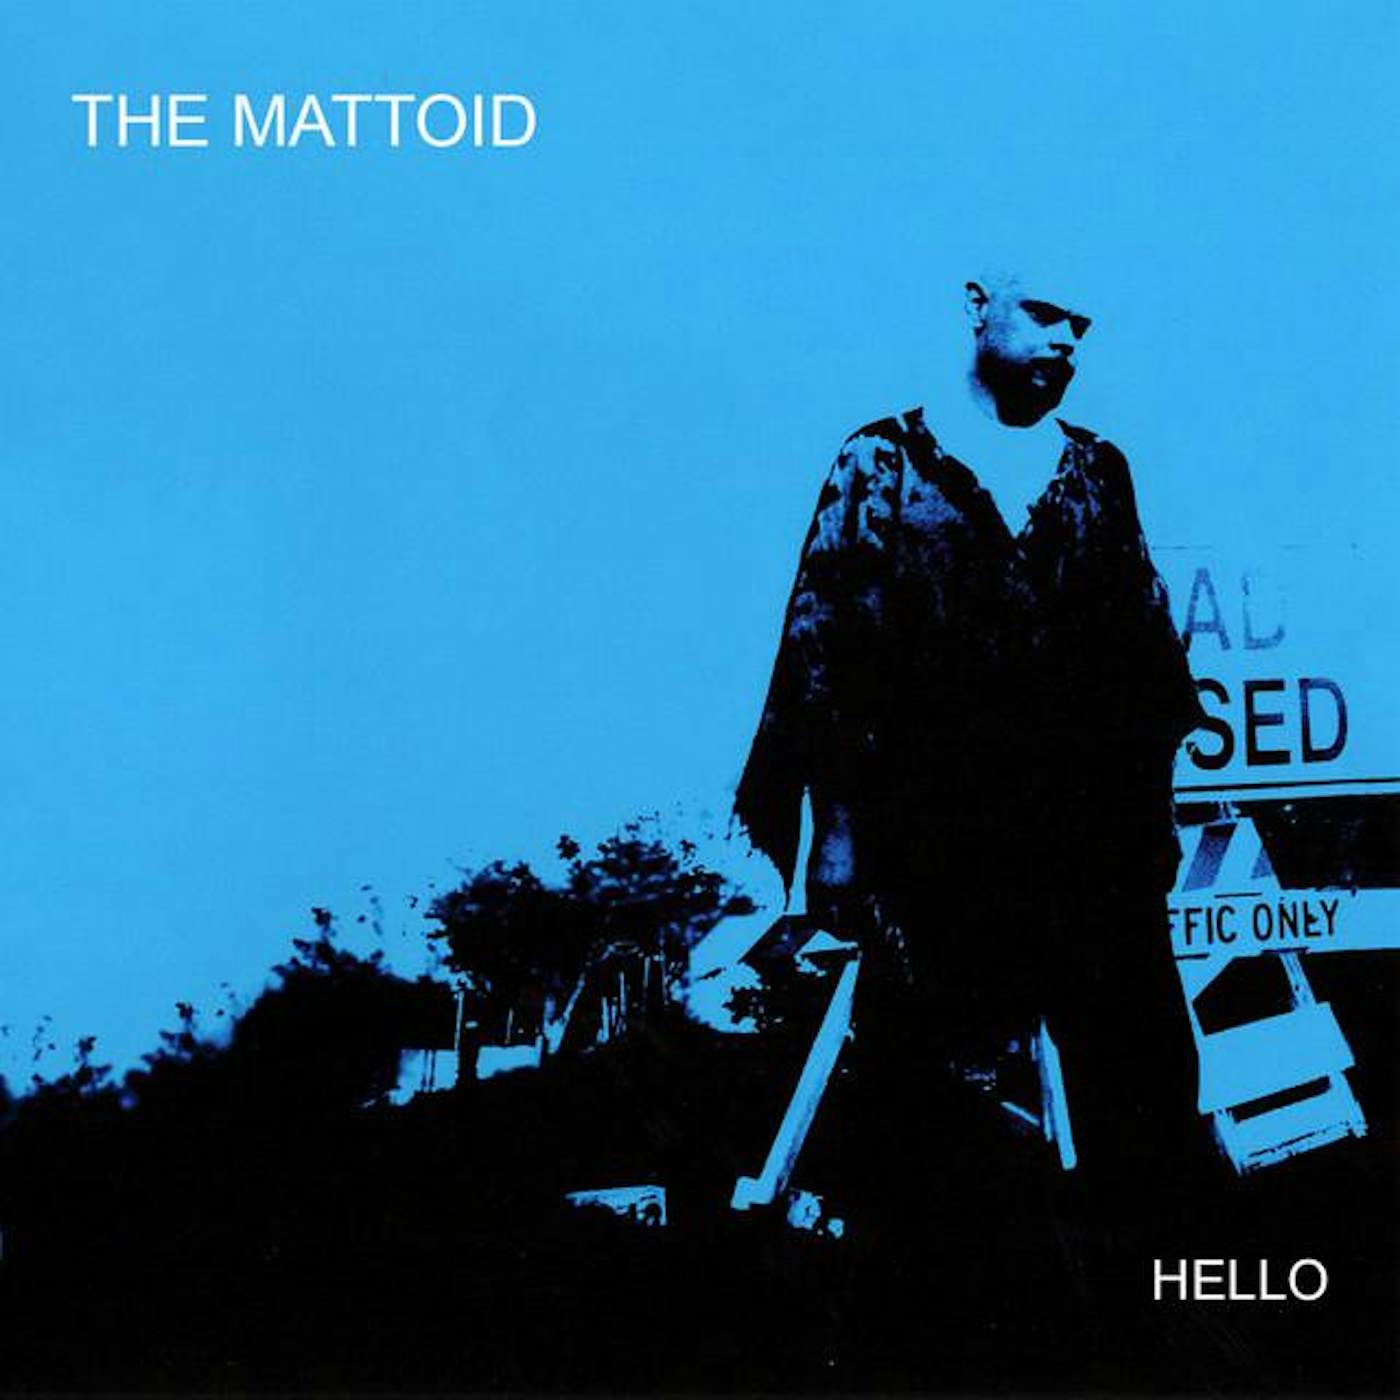 The Mattoid